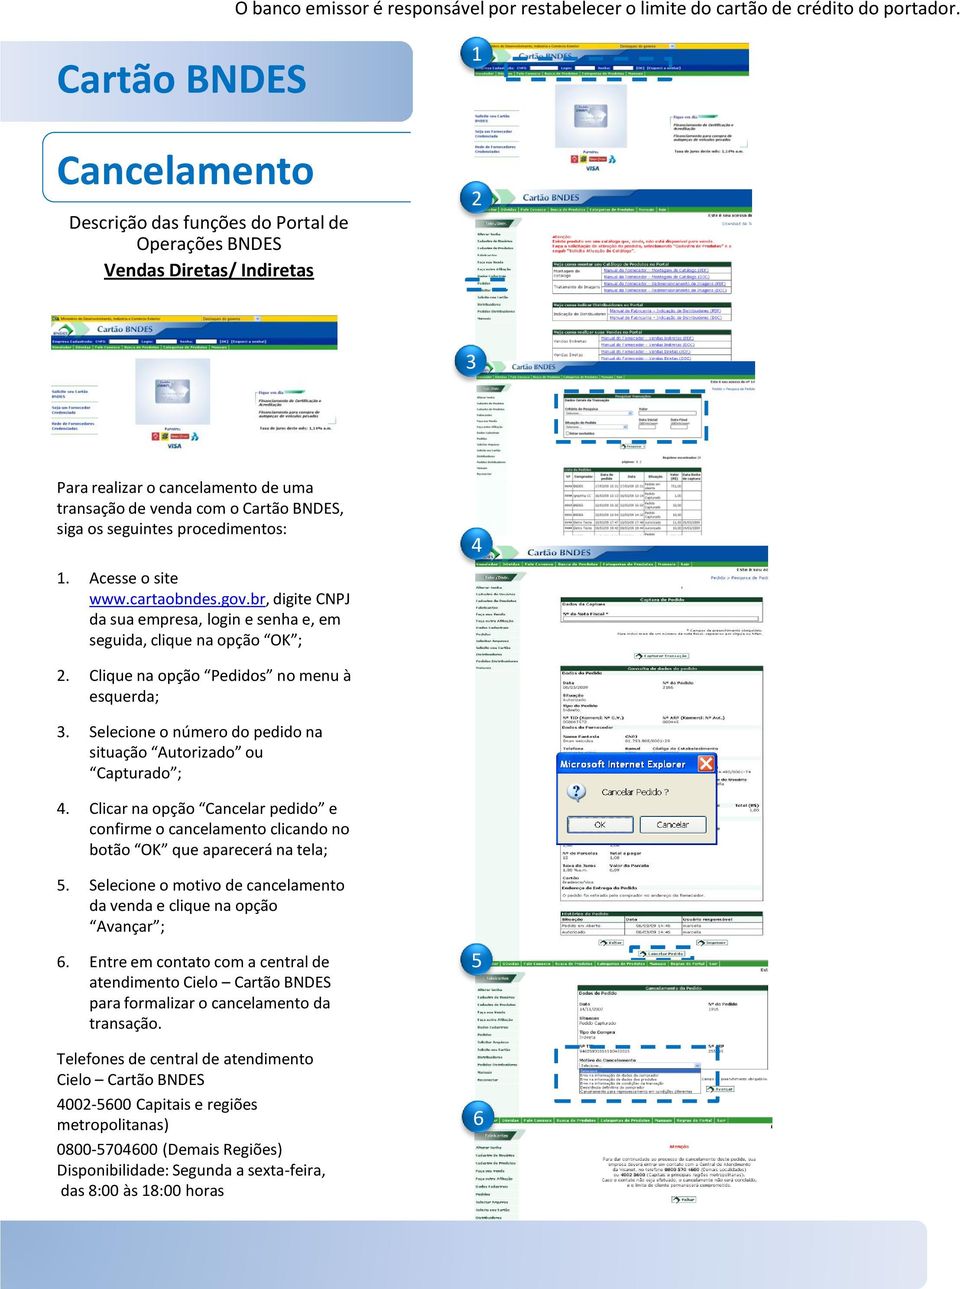 Acesse o site www.cartaobndes.gov.br, digite CNPJ da sua empresa, login e senha e, em seguida, clique na opção OK ; 4 2. Clique na opção Pedidos no menu à esquerda; 3.